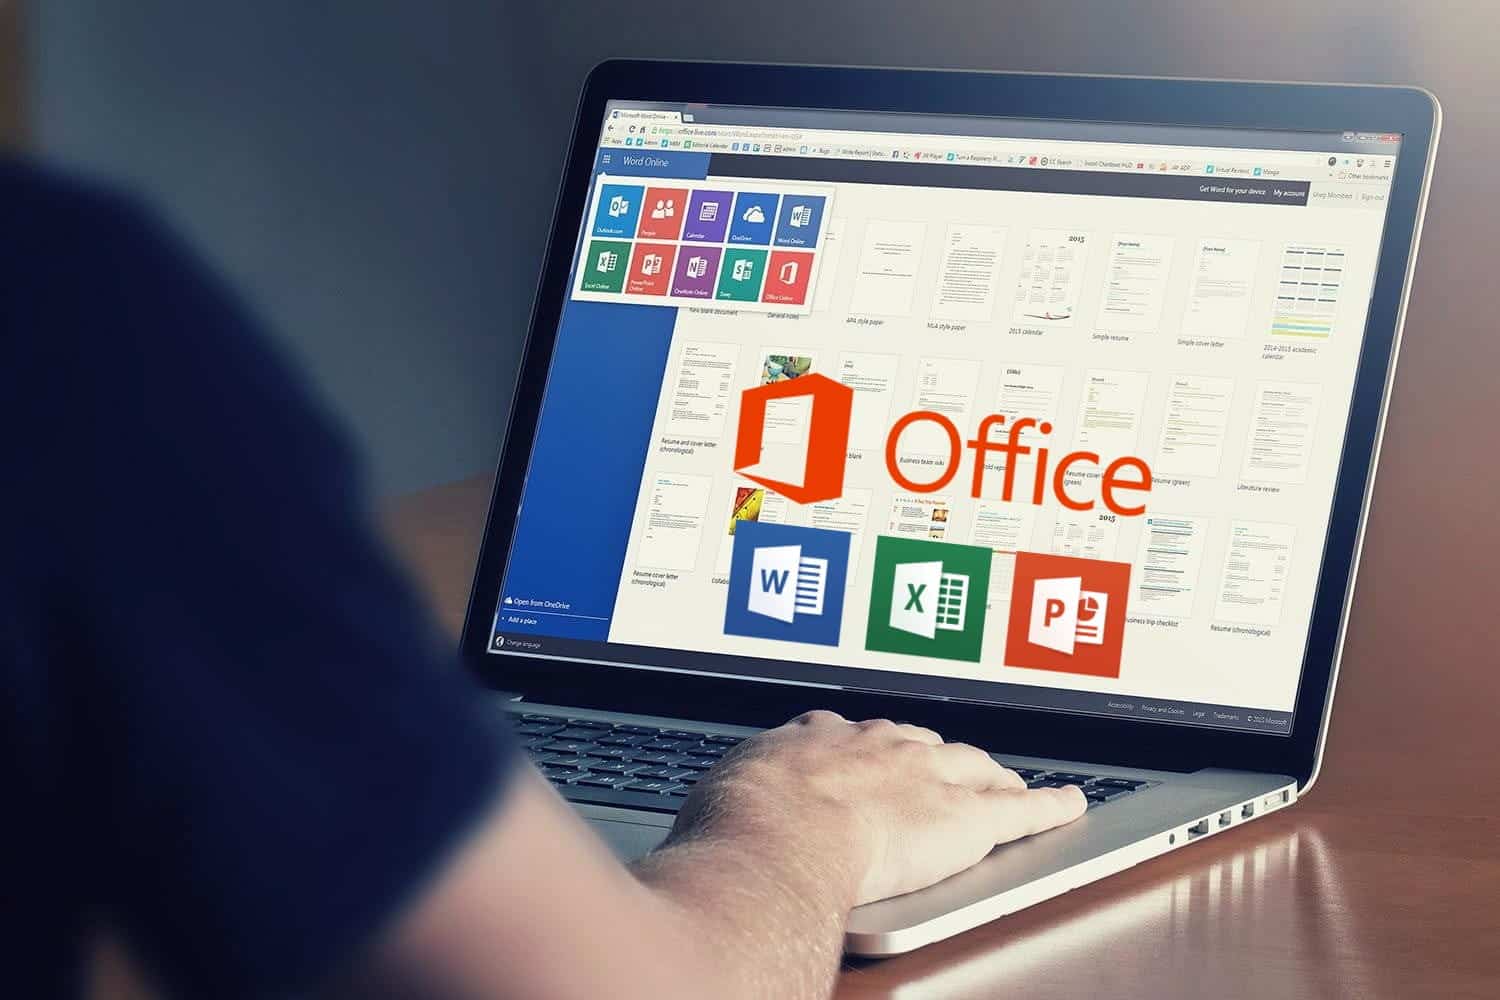 أفضل الطرق للحصول على تراخيص Microsoft Office et Word بتكلفة أقل أو حتى مجانًا - مقالات